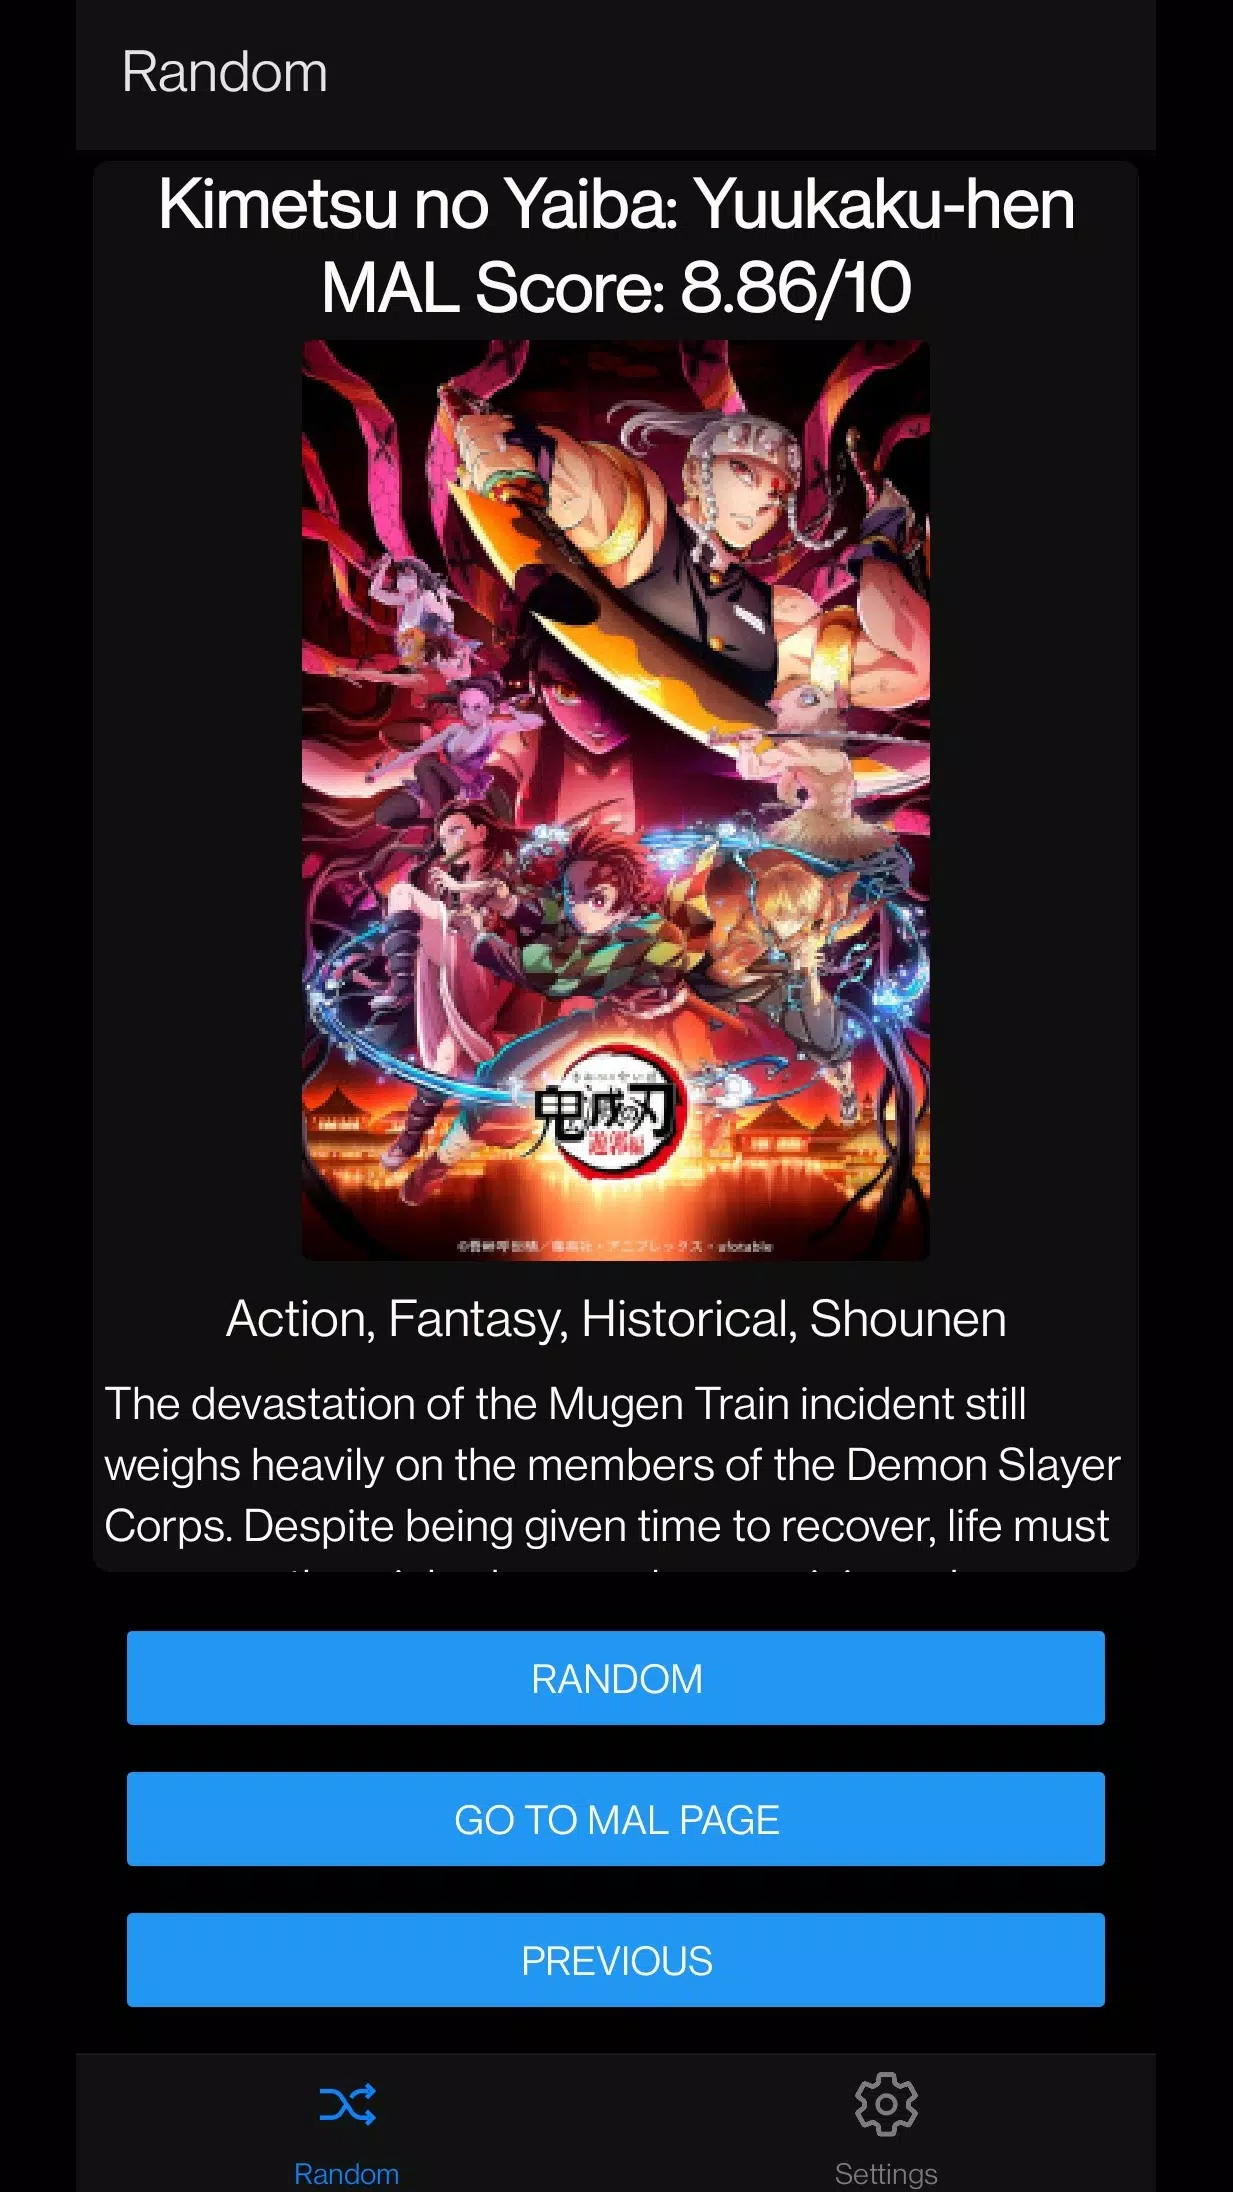 Random Anime Generator APK für Android herunterladen